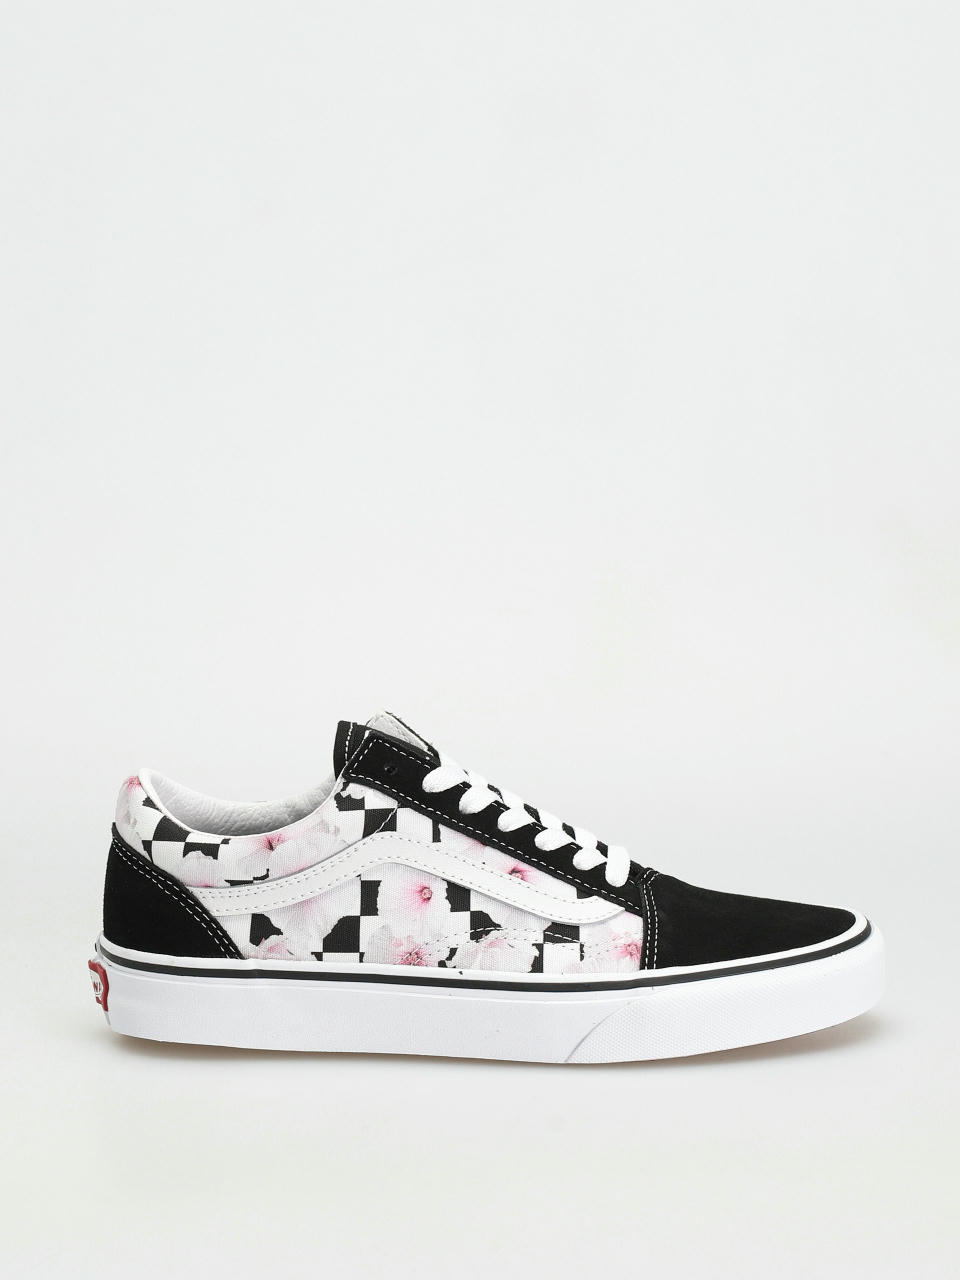 Vans Old Skool Shoes Wmn (hibiscus checkerboard black)